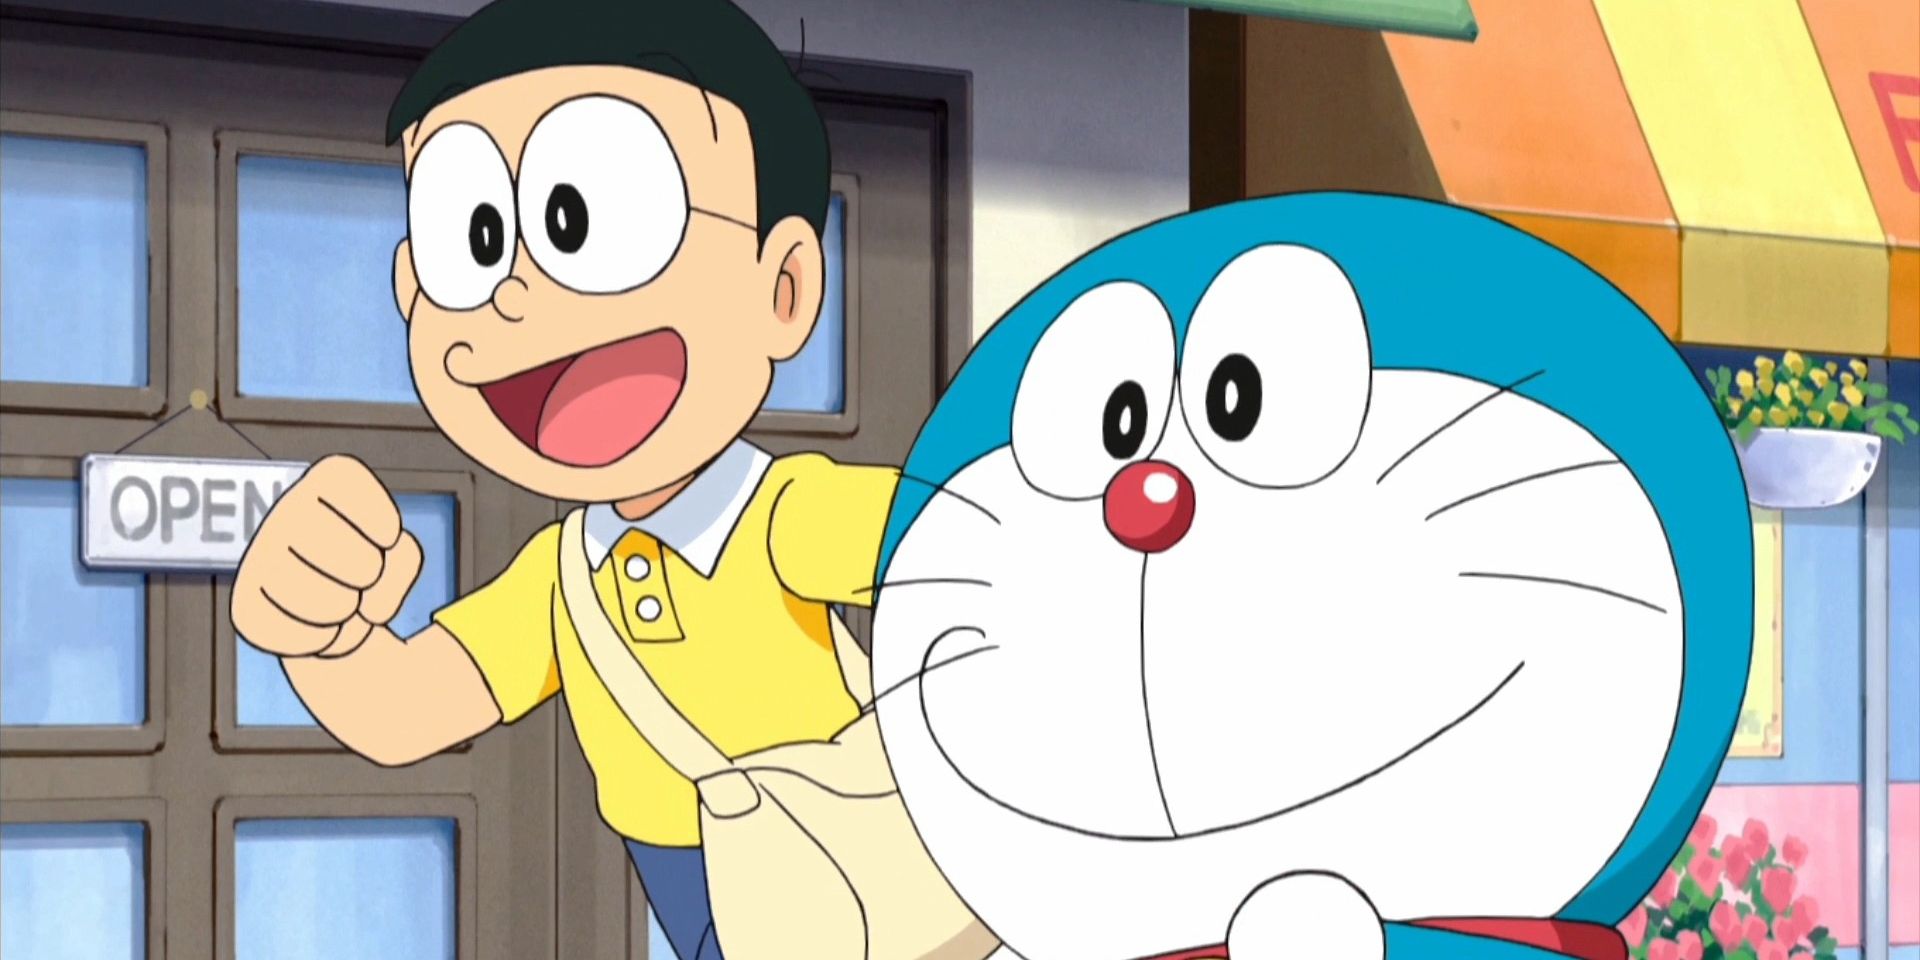 Doraemon and Nobita